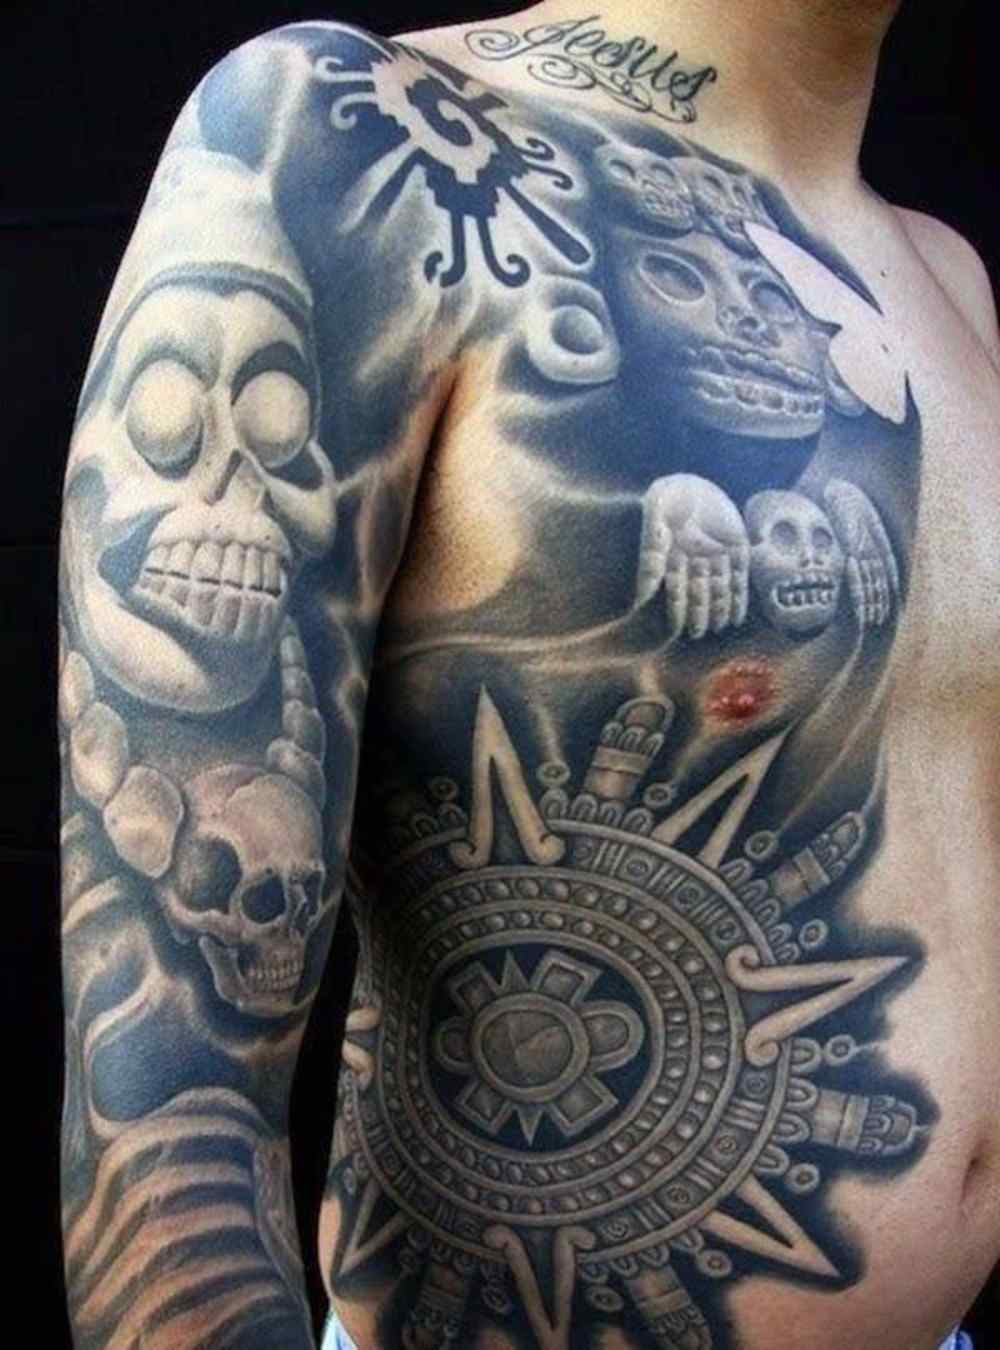 aztec tatueringsarm och överkropp höger sida med symboliska motiv